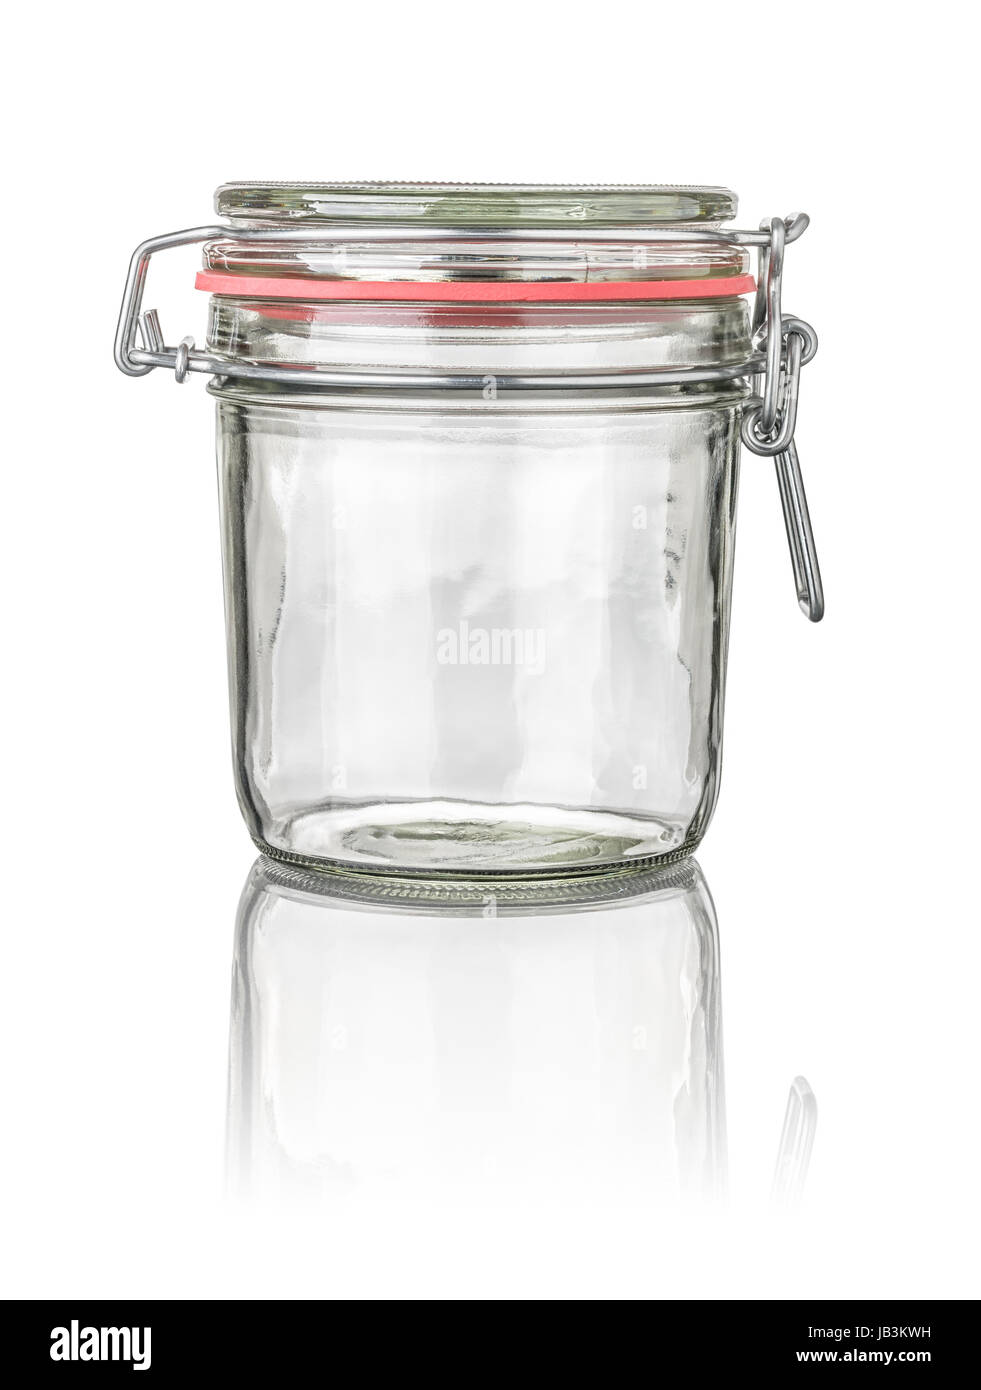 freigestelltes Einmachglas mit Drahtbügelverschluss Stock Photo